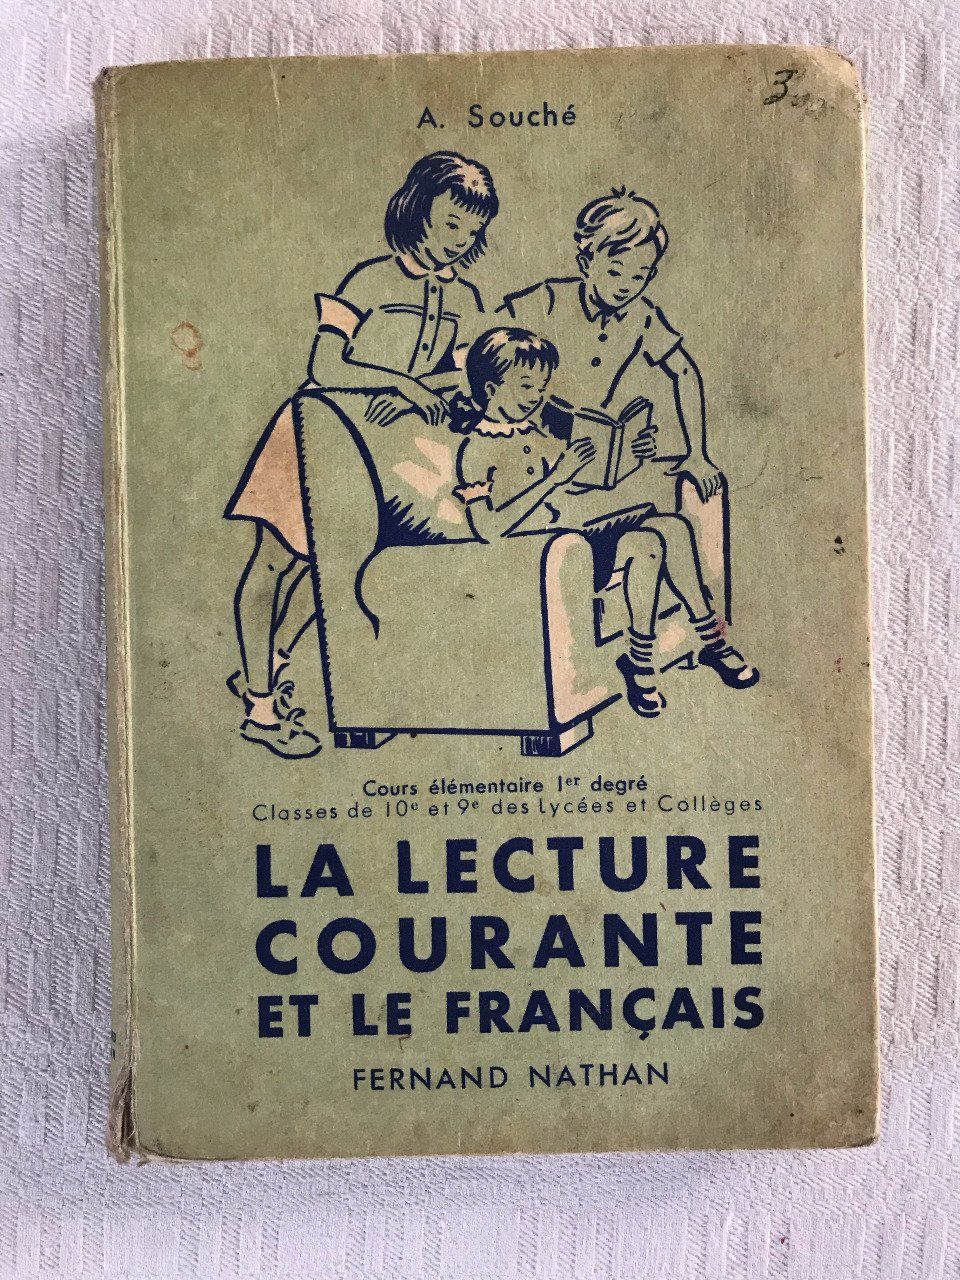 Livre scolaire ancien, La lecture courante et le Français, 1953 -  Videgrenierdunet